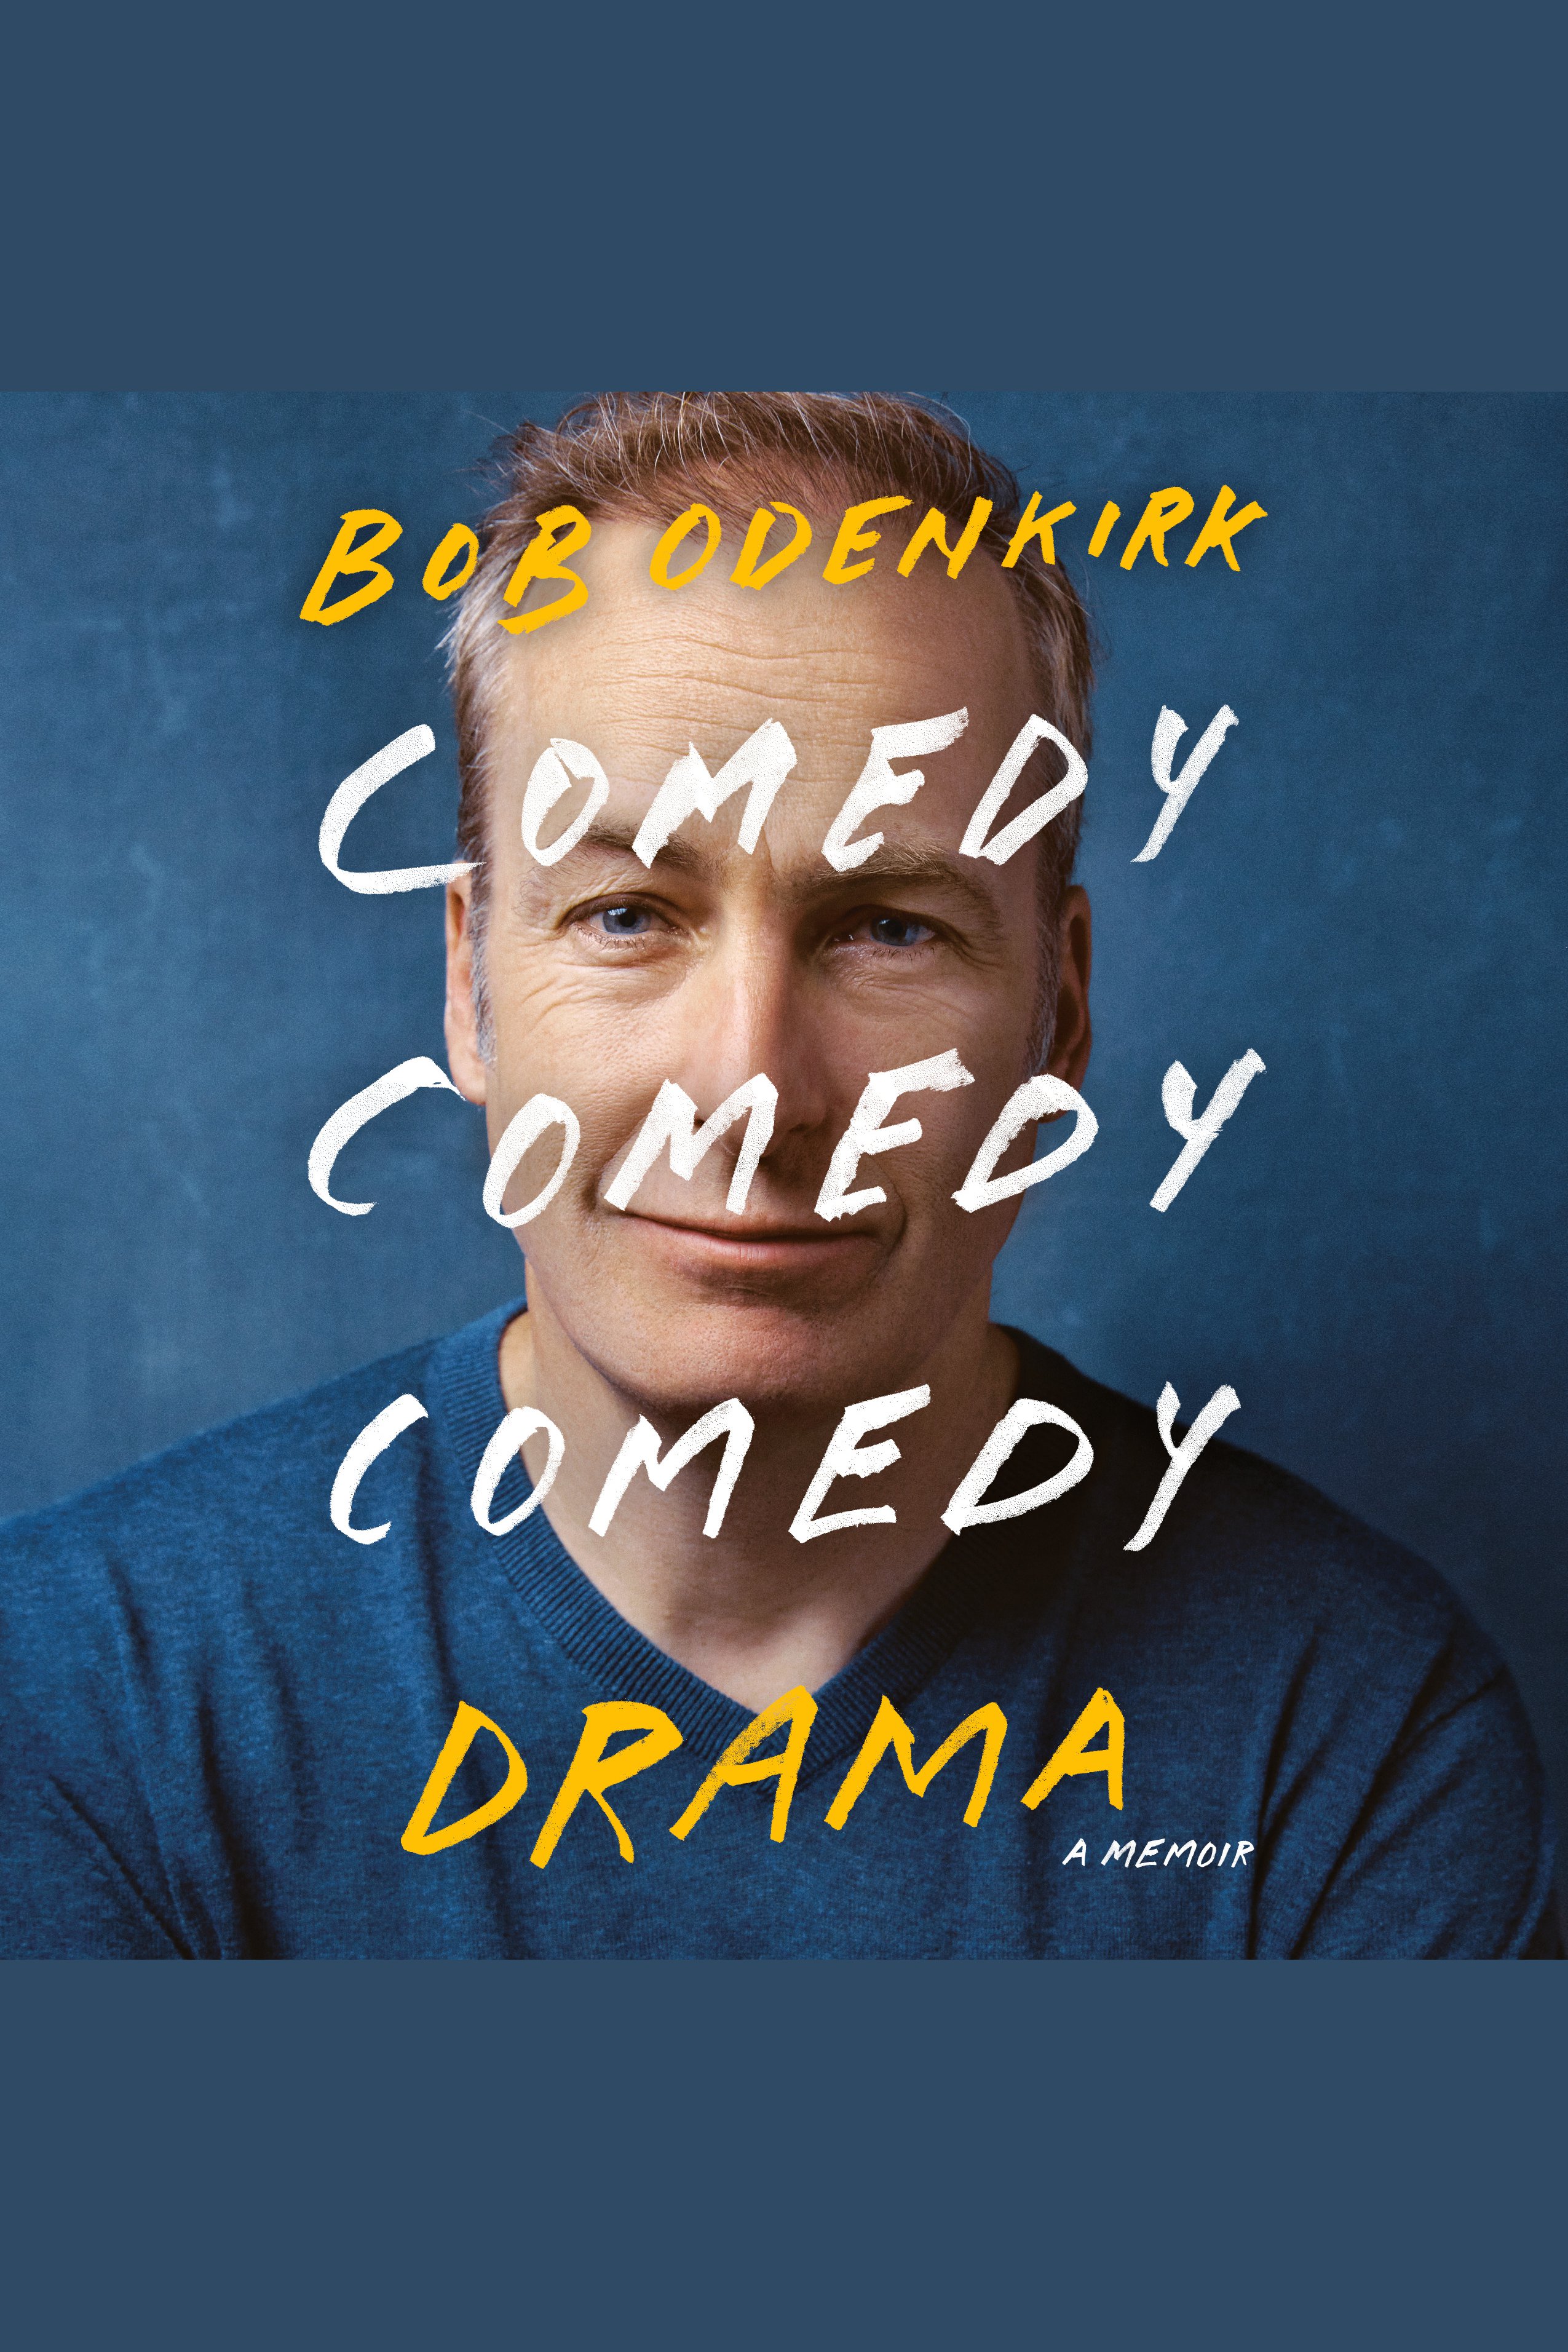 Comedy comedy comedy drama : a memoir